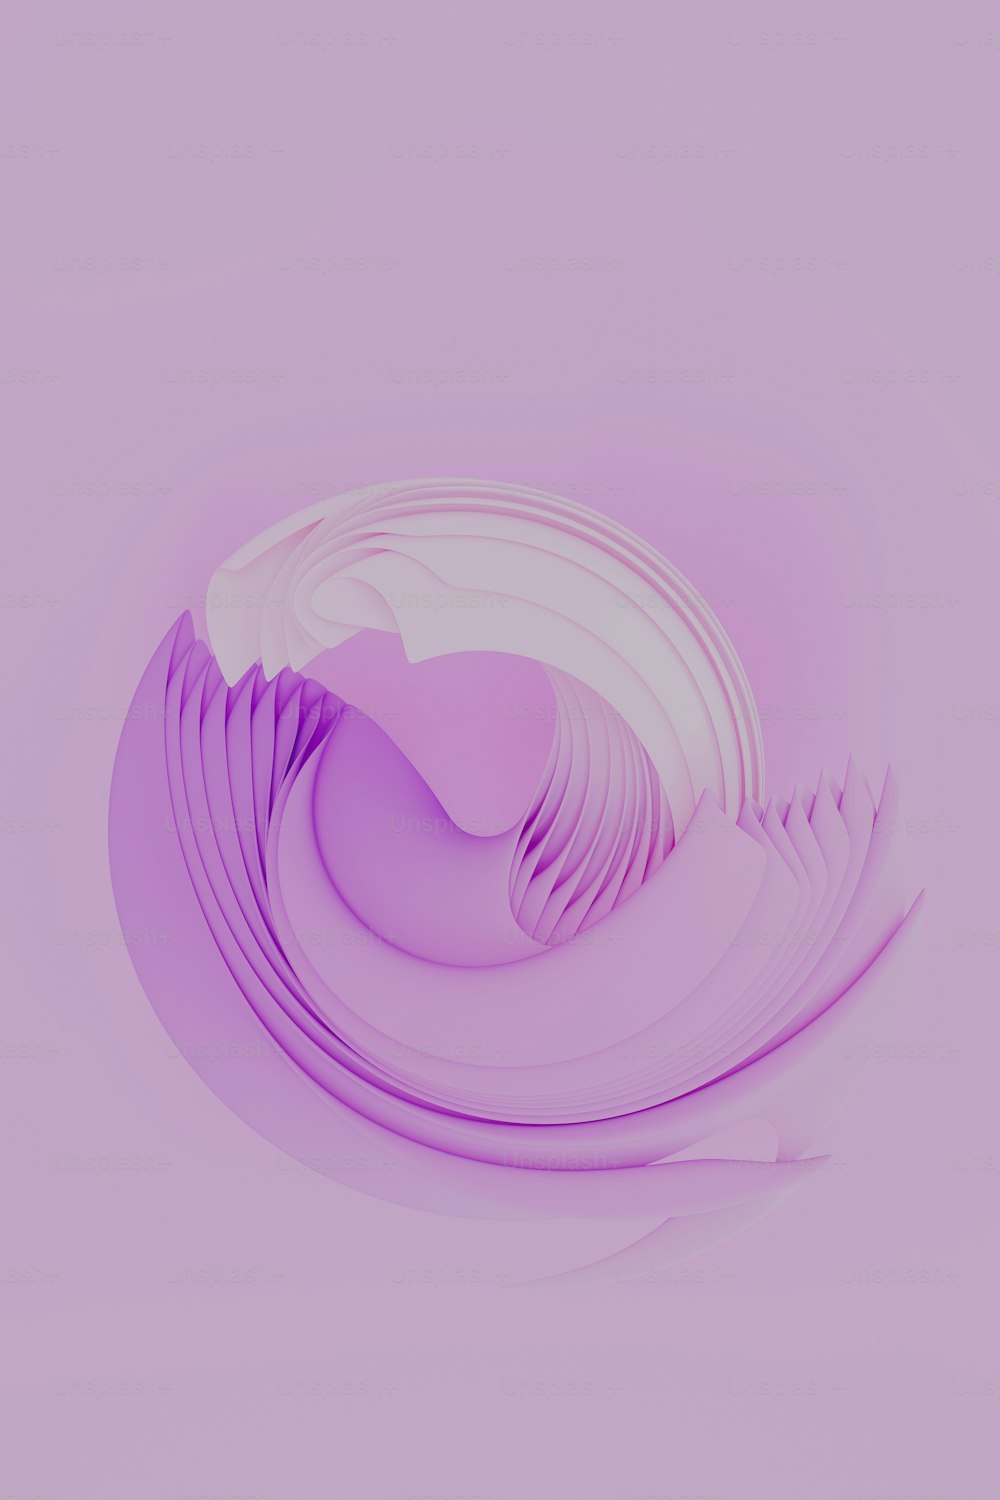 Una placa blanca con un diseño púrpura